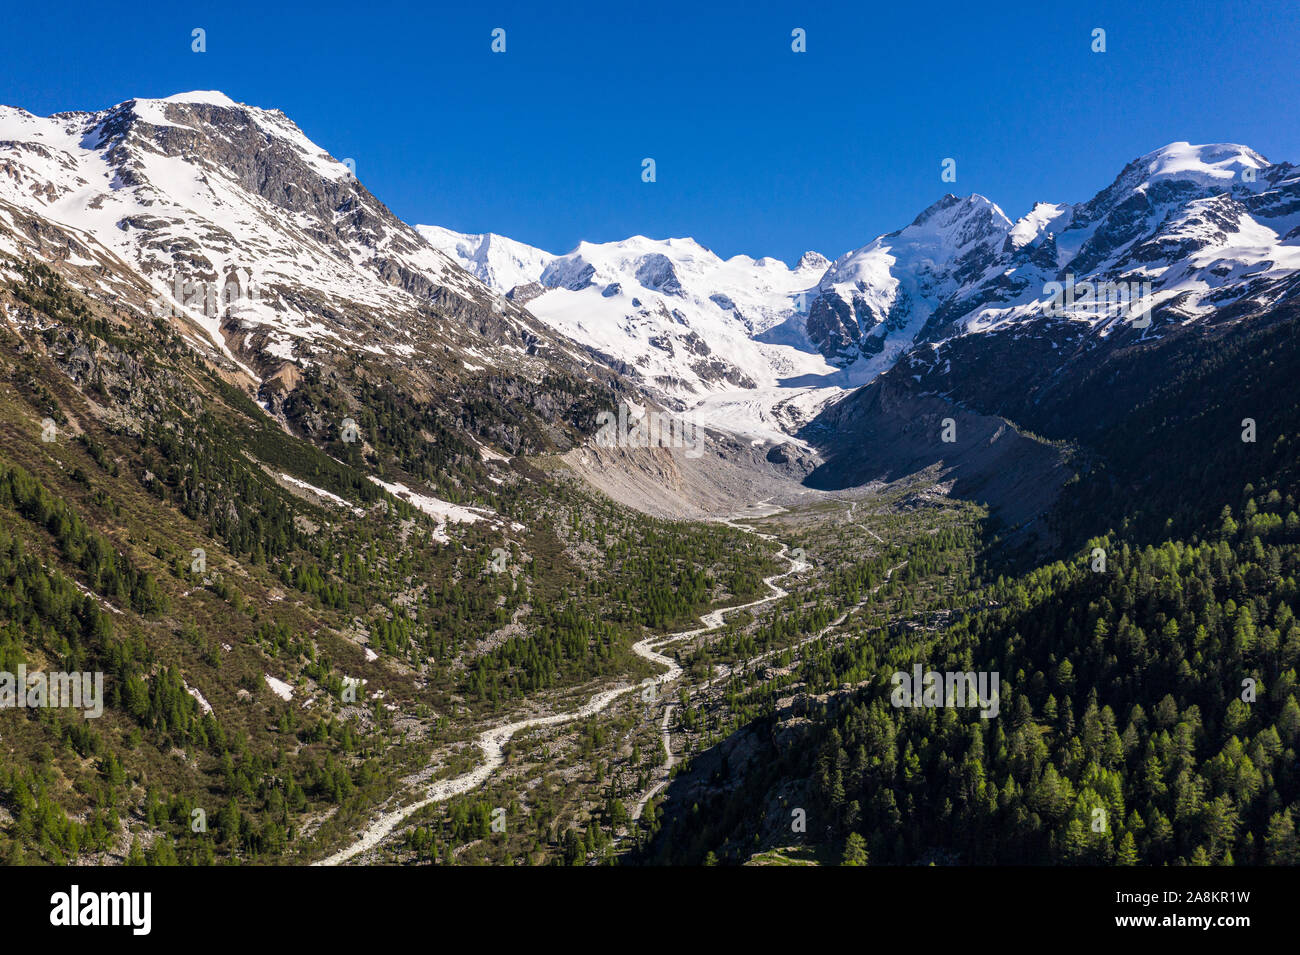 Incredibile vista aerea del Bernina in montagna e sul ghiacciaio, che la fusione è veloce, nelle alpi nel Grigioni in Svizzera Foto Stock